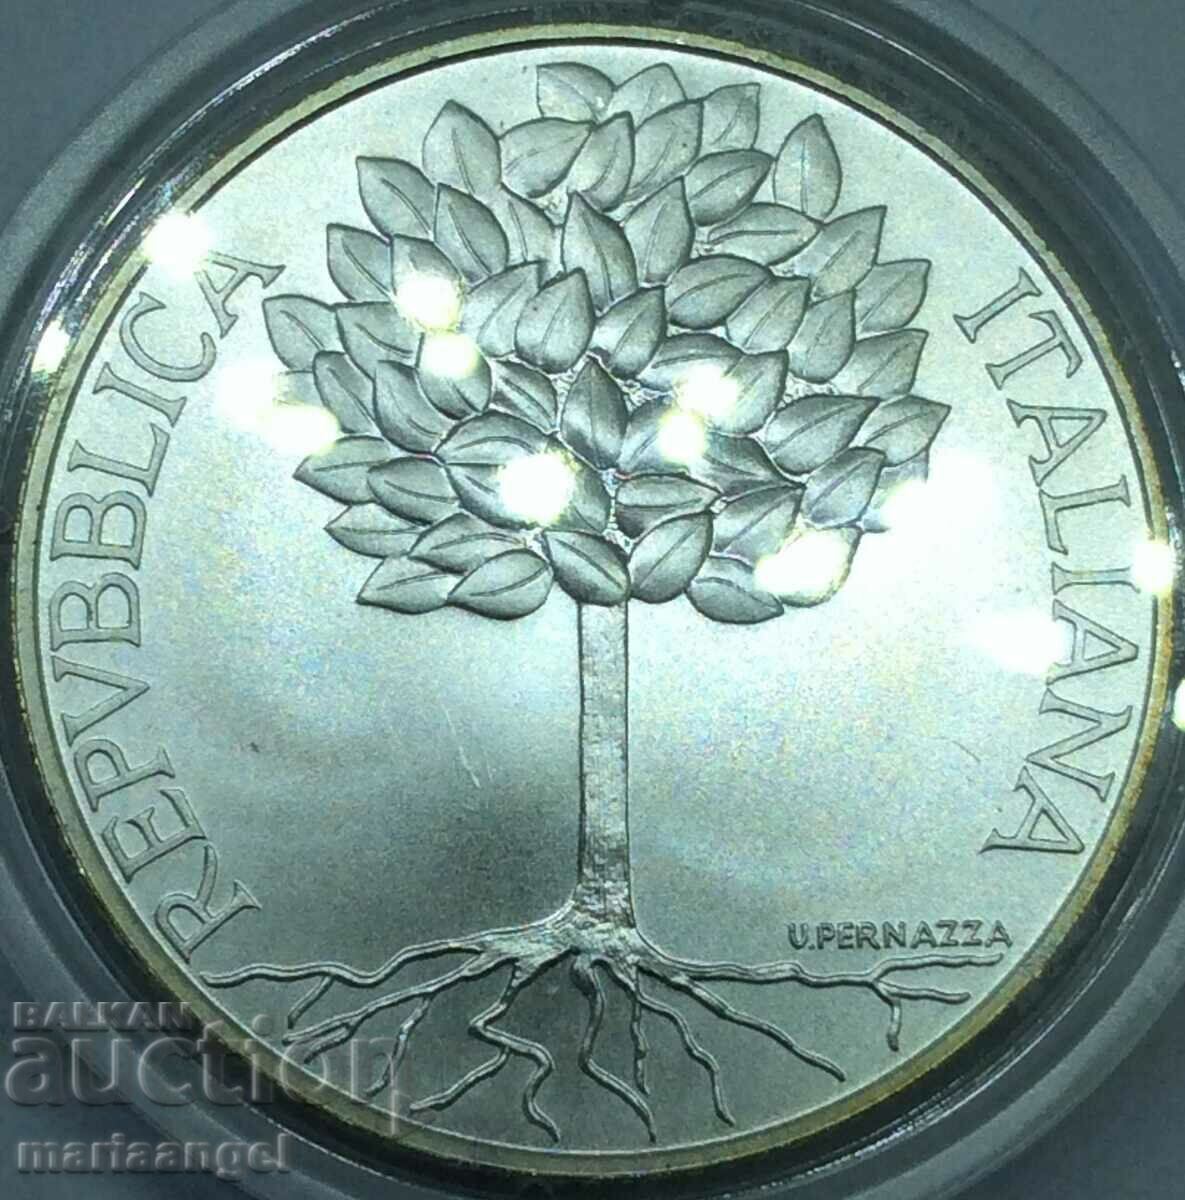 5 евро 2003 Италия "United Europe" UNC  сребро